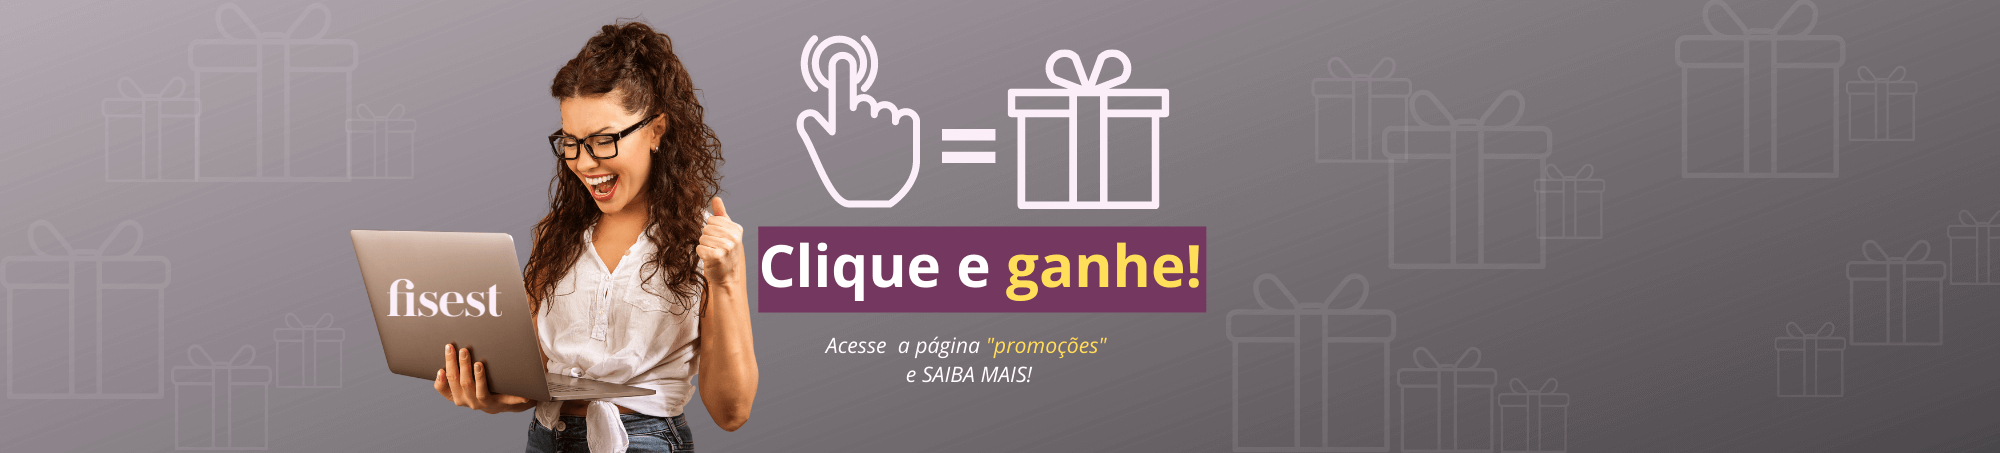 Clique-e-Ganhe-site-fisest-new